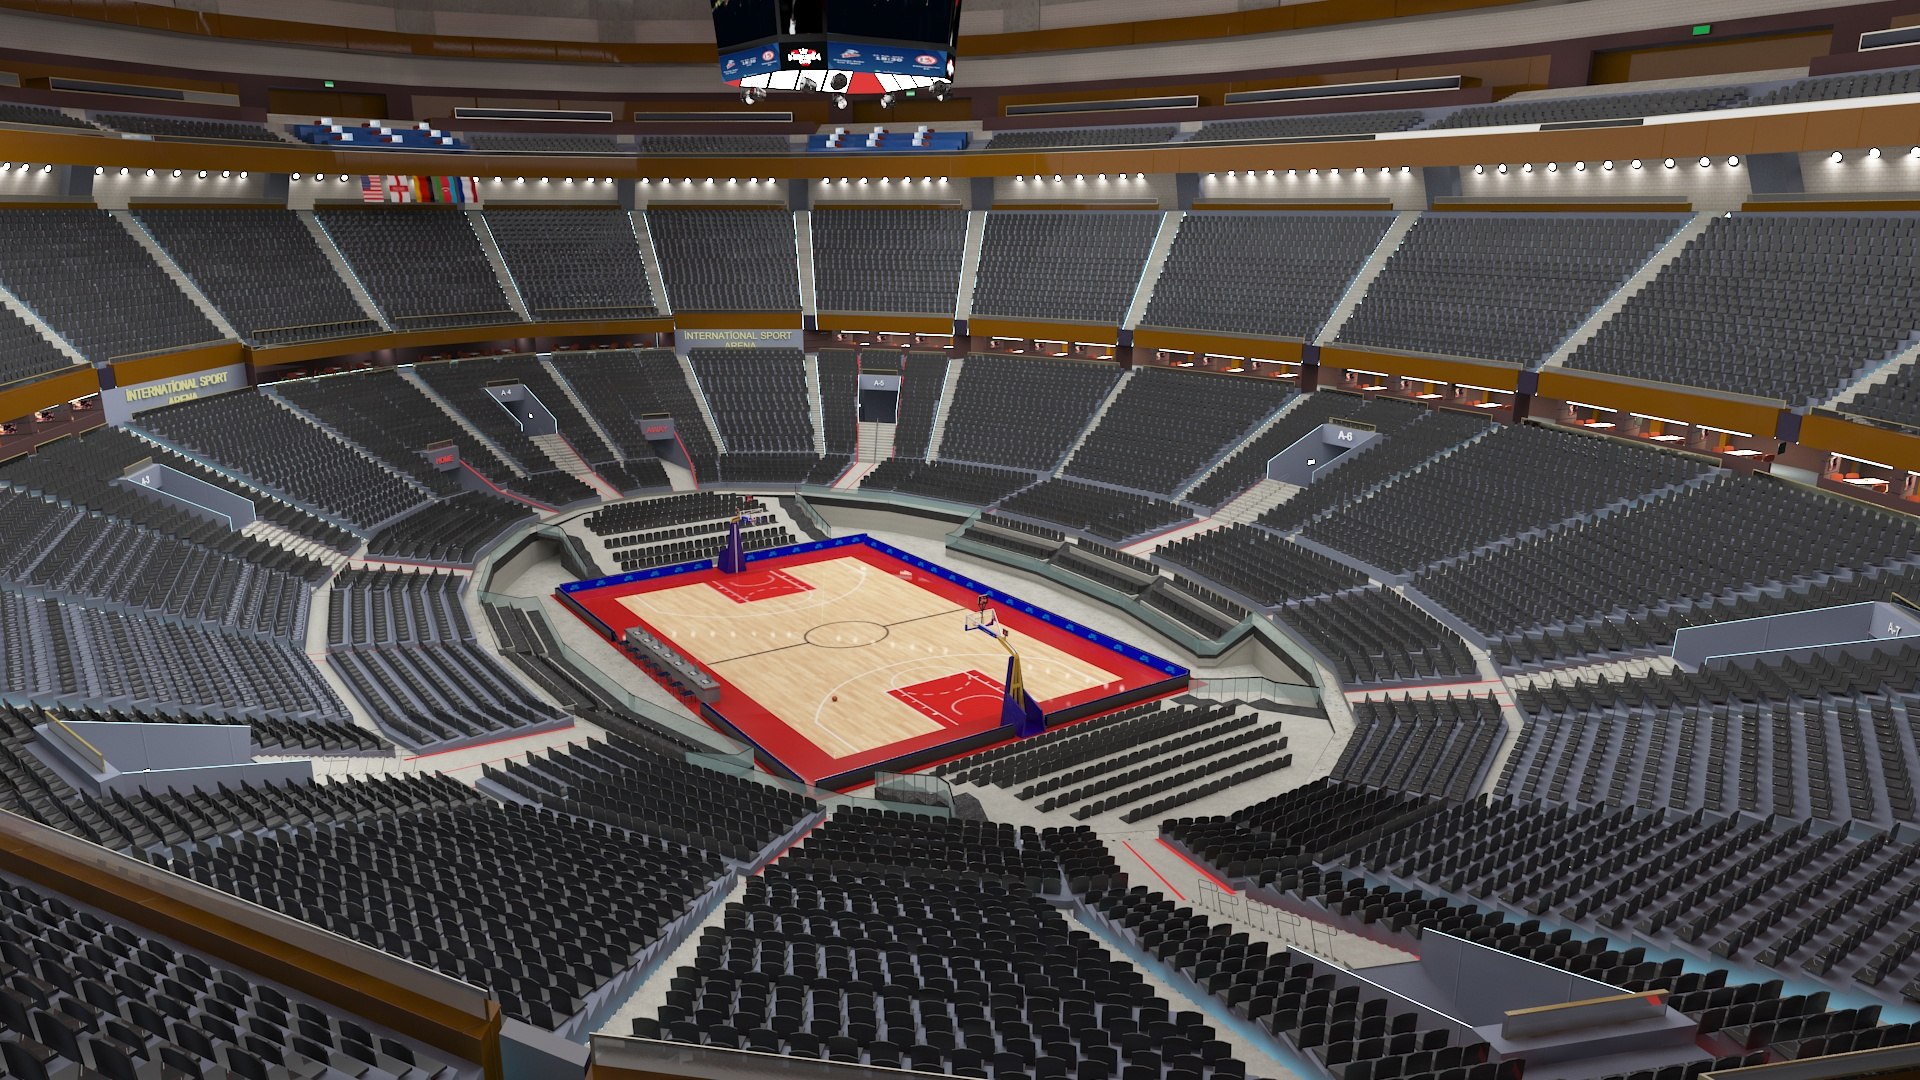 Arena Basket Ball 3D Model - TurboSquid 1621617